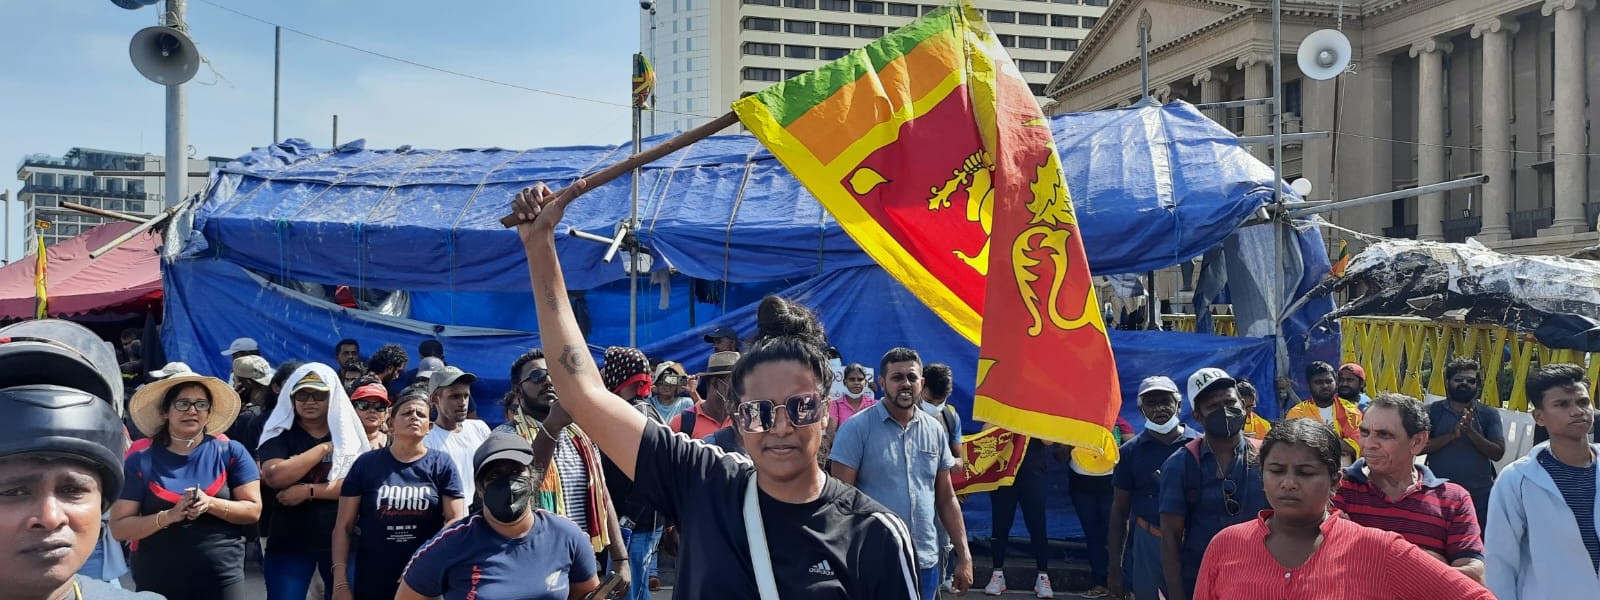 BREAKING: Sri Lankan President’s House stormed by protestors